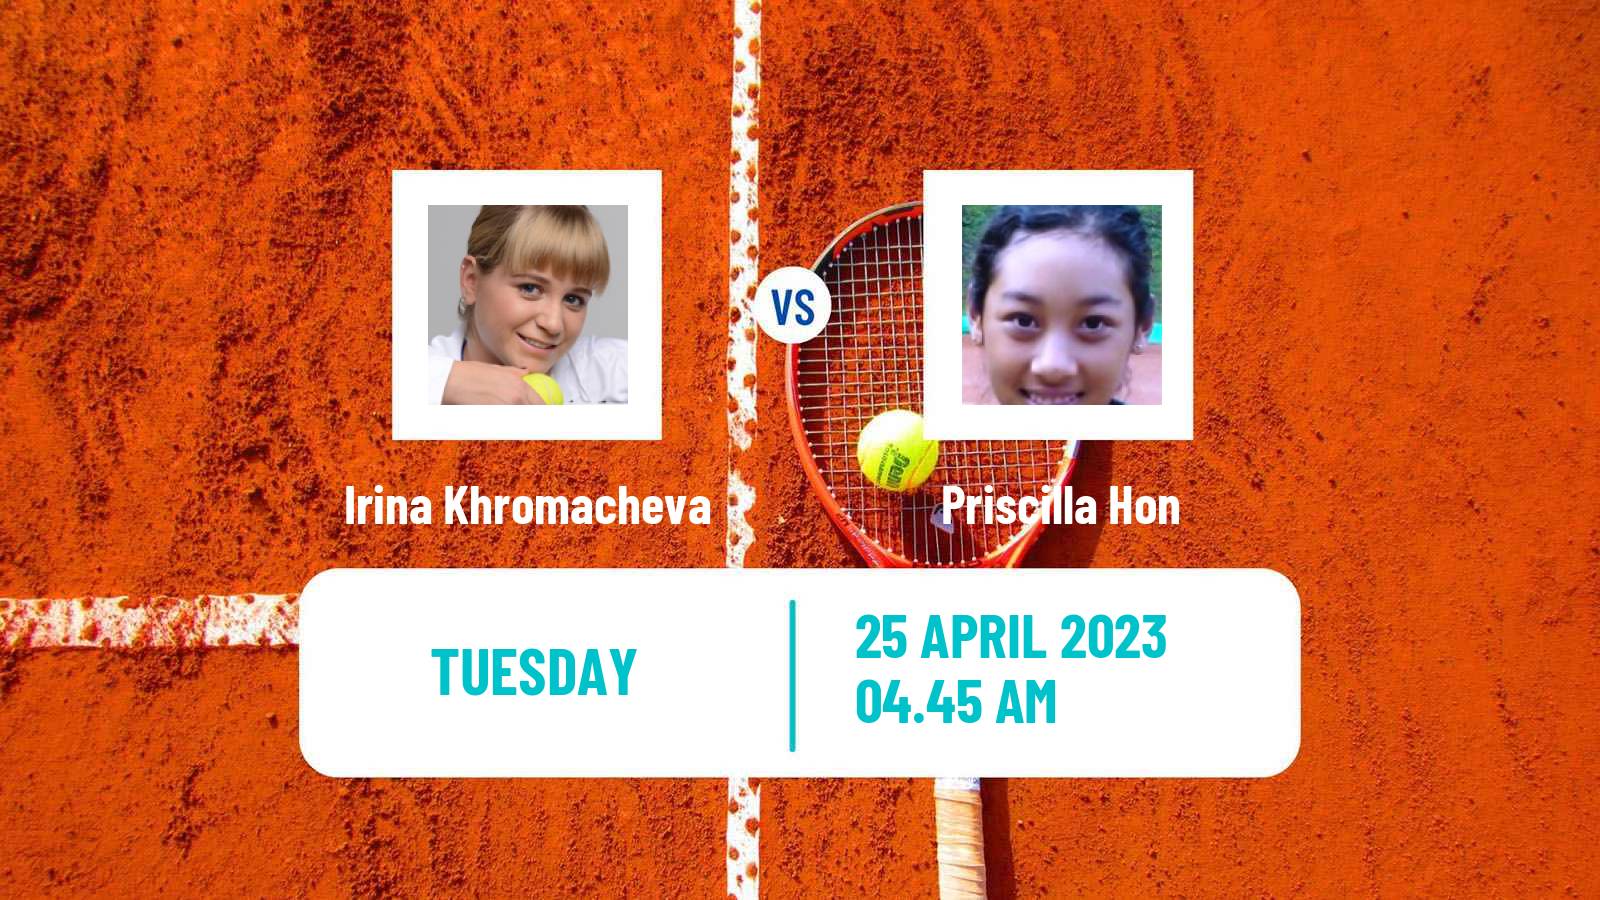 Tennis ITF Tournaments Irina Khromacheva - Priscilla Hon